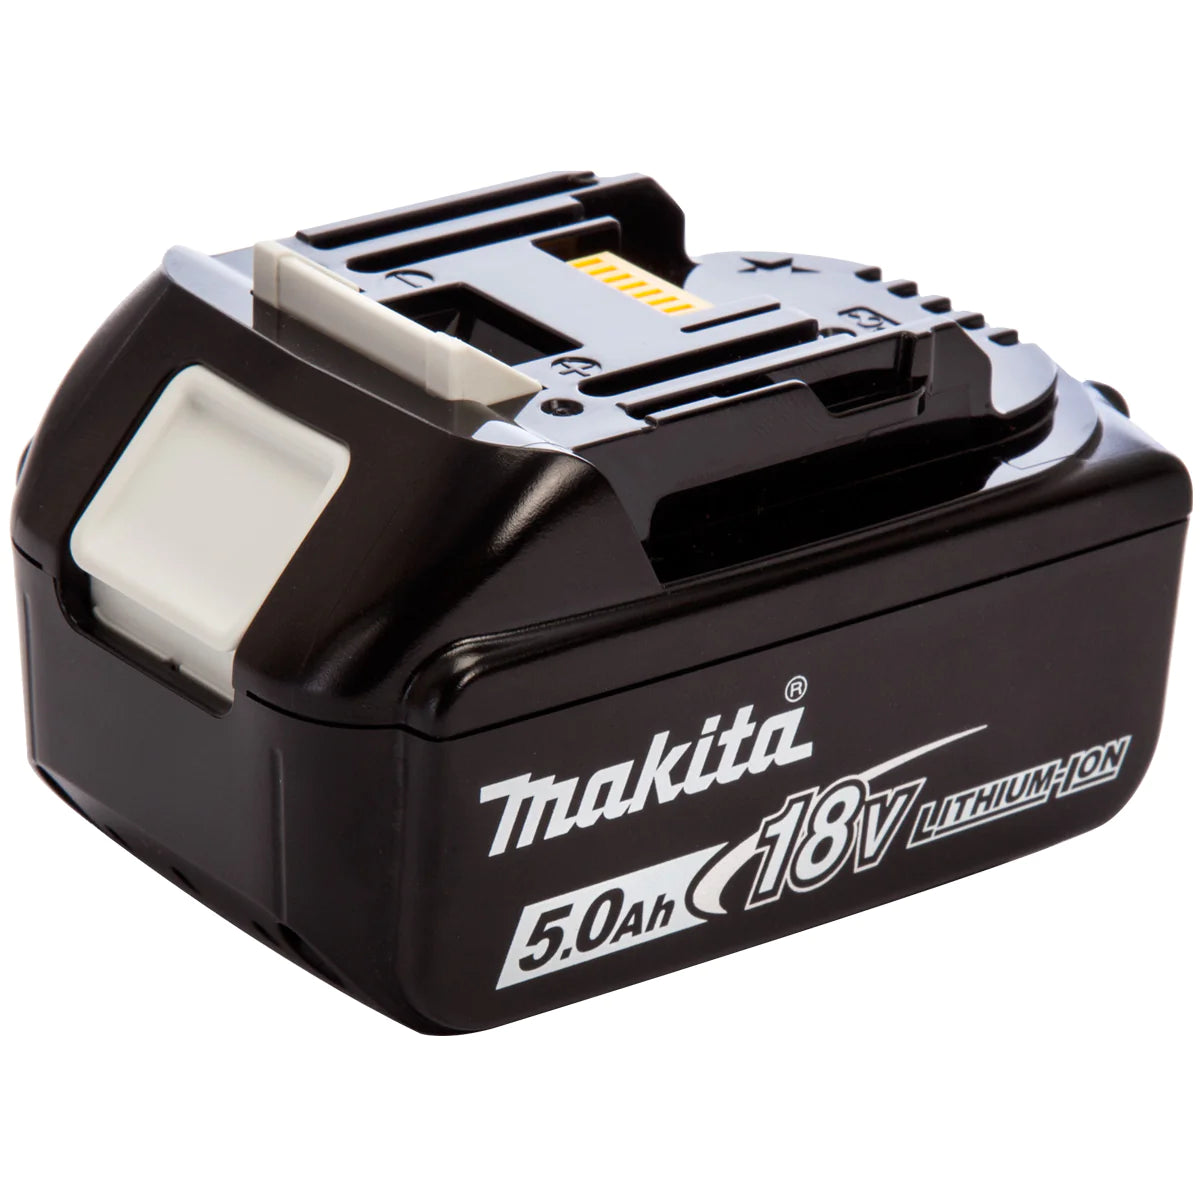 Makita 10 Piece Kit 18V Li-ion With 4 x 5.0Ah Batteries Charger